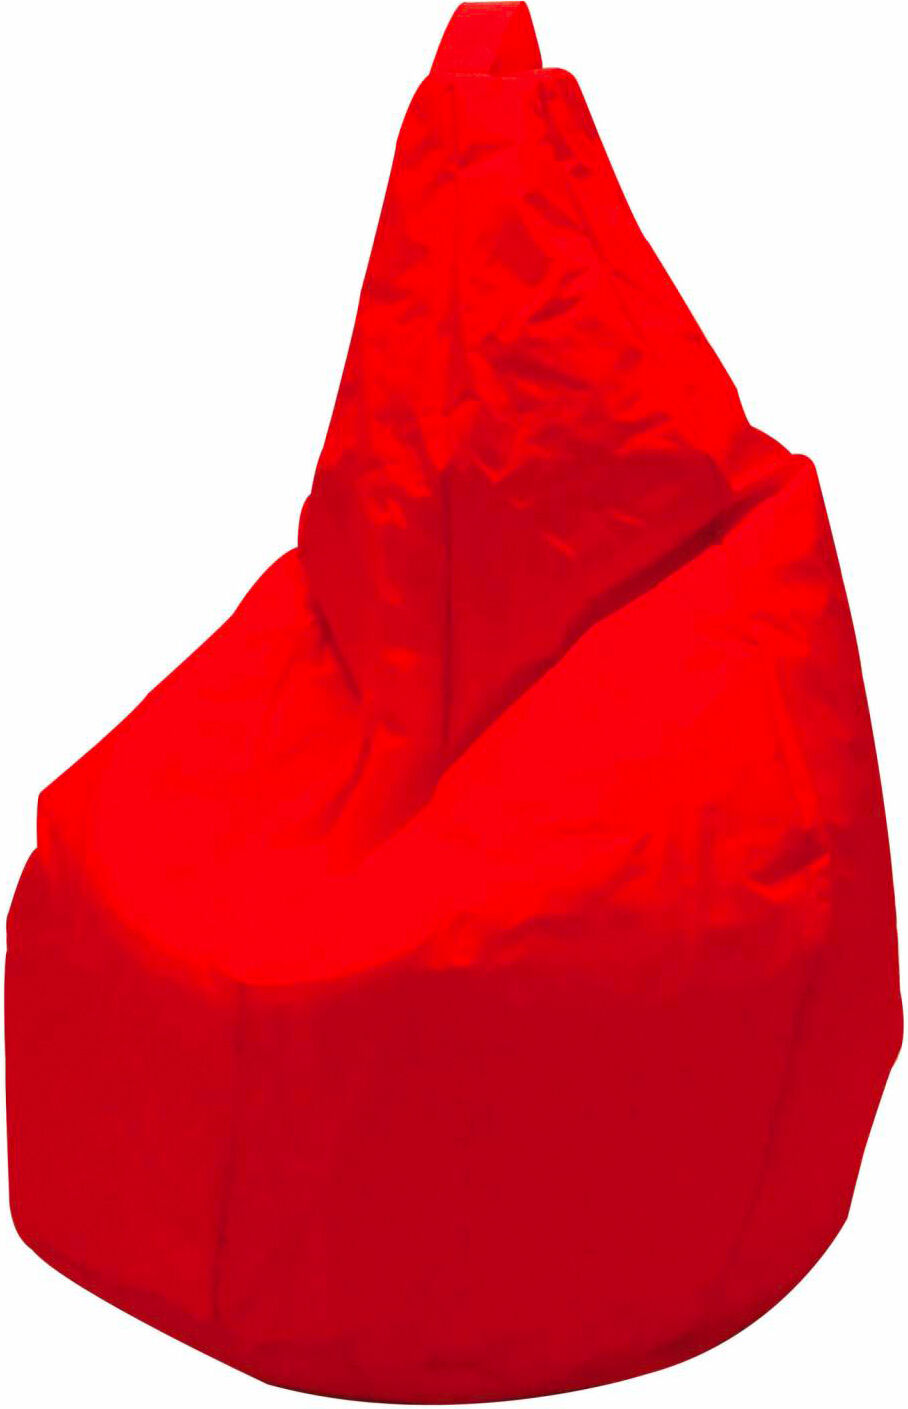 king home p1551002/d pouf comodone poltrona sacco morbido in nylon Ø 80 x 120 cm colore rosso - p1551002/d